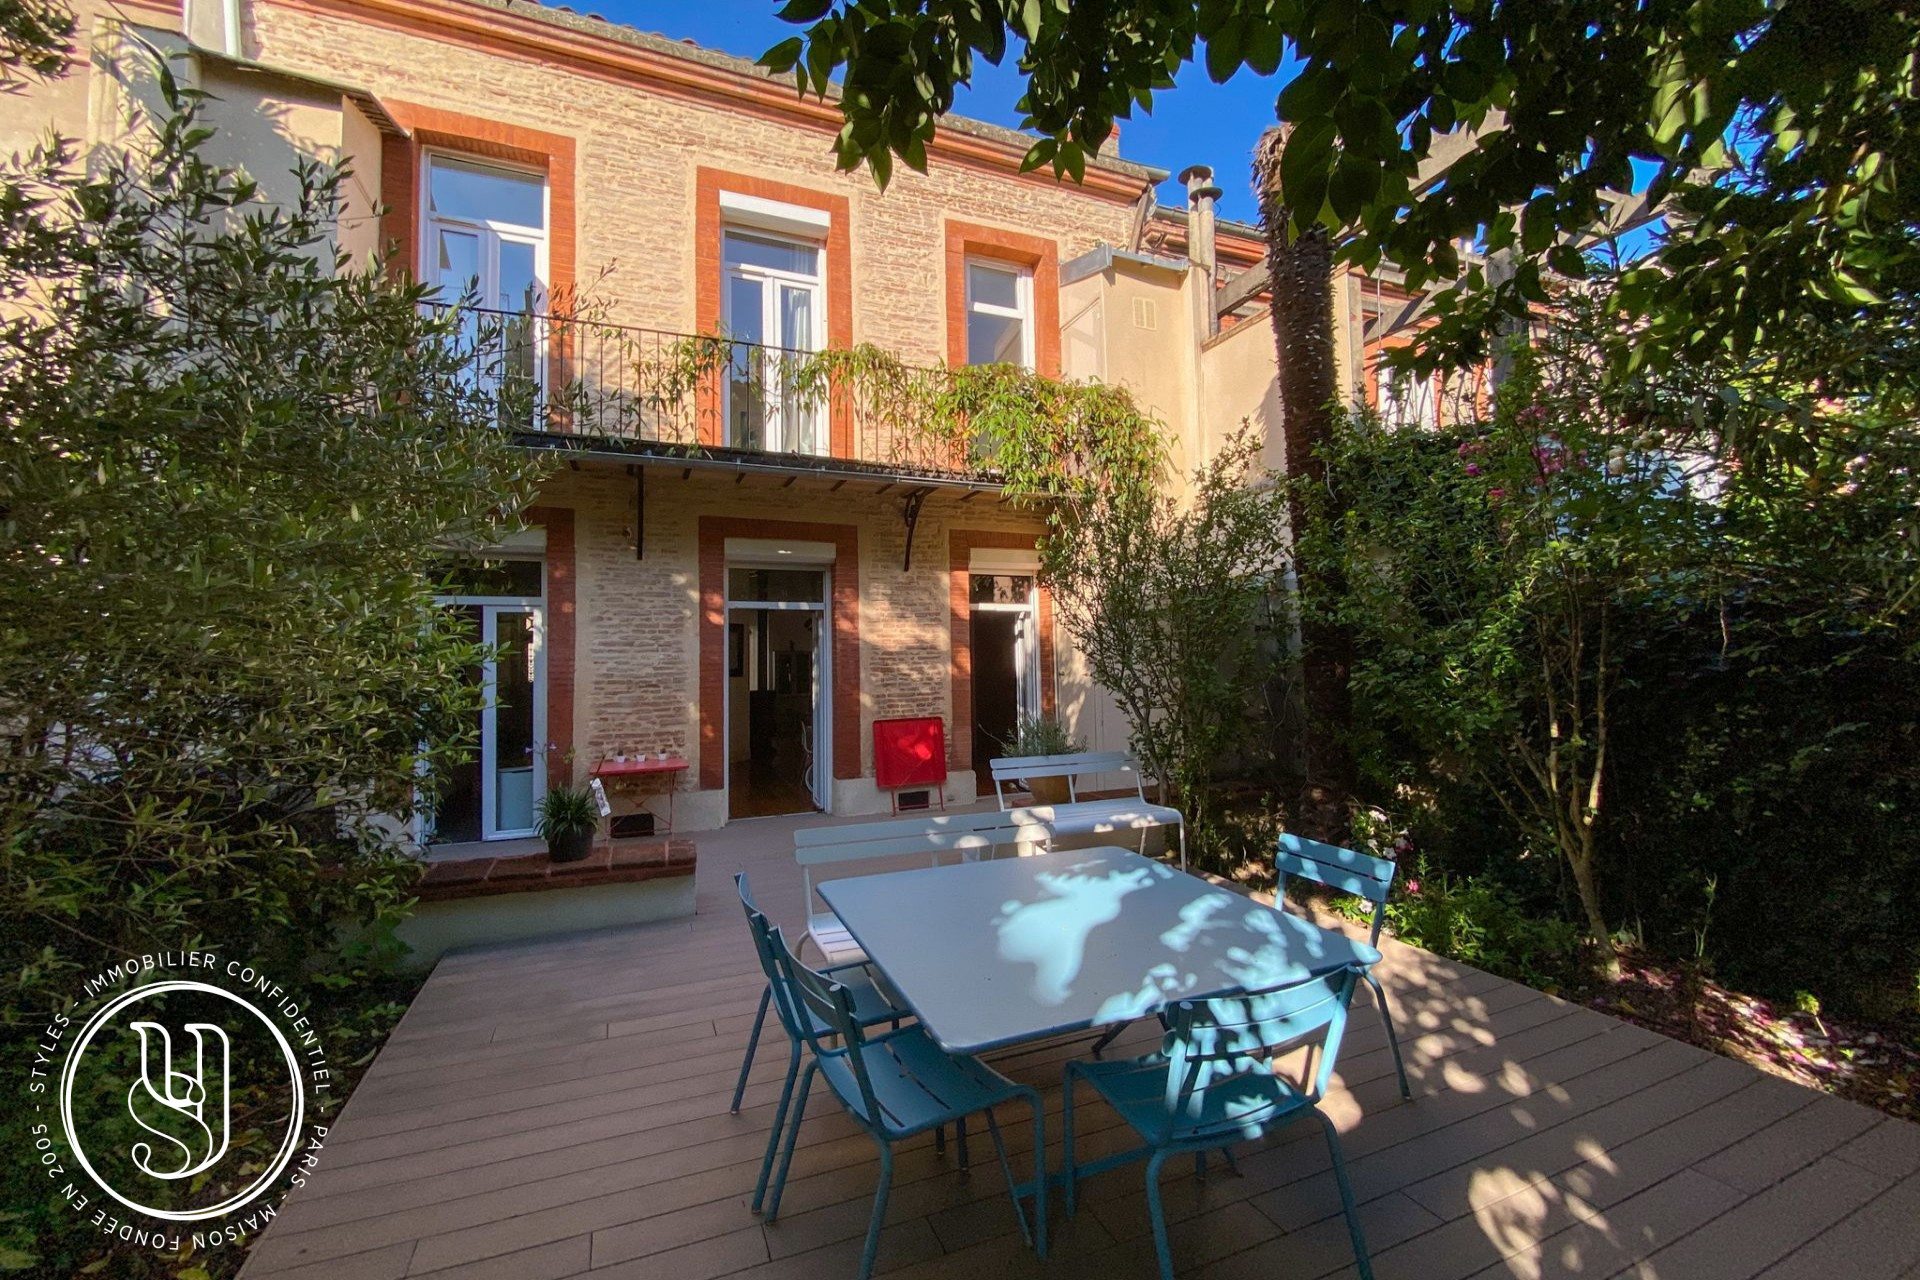 Toulouse - Chalets - Sous offre - Une superbe maison de ville familiale a - image 14